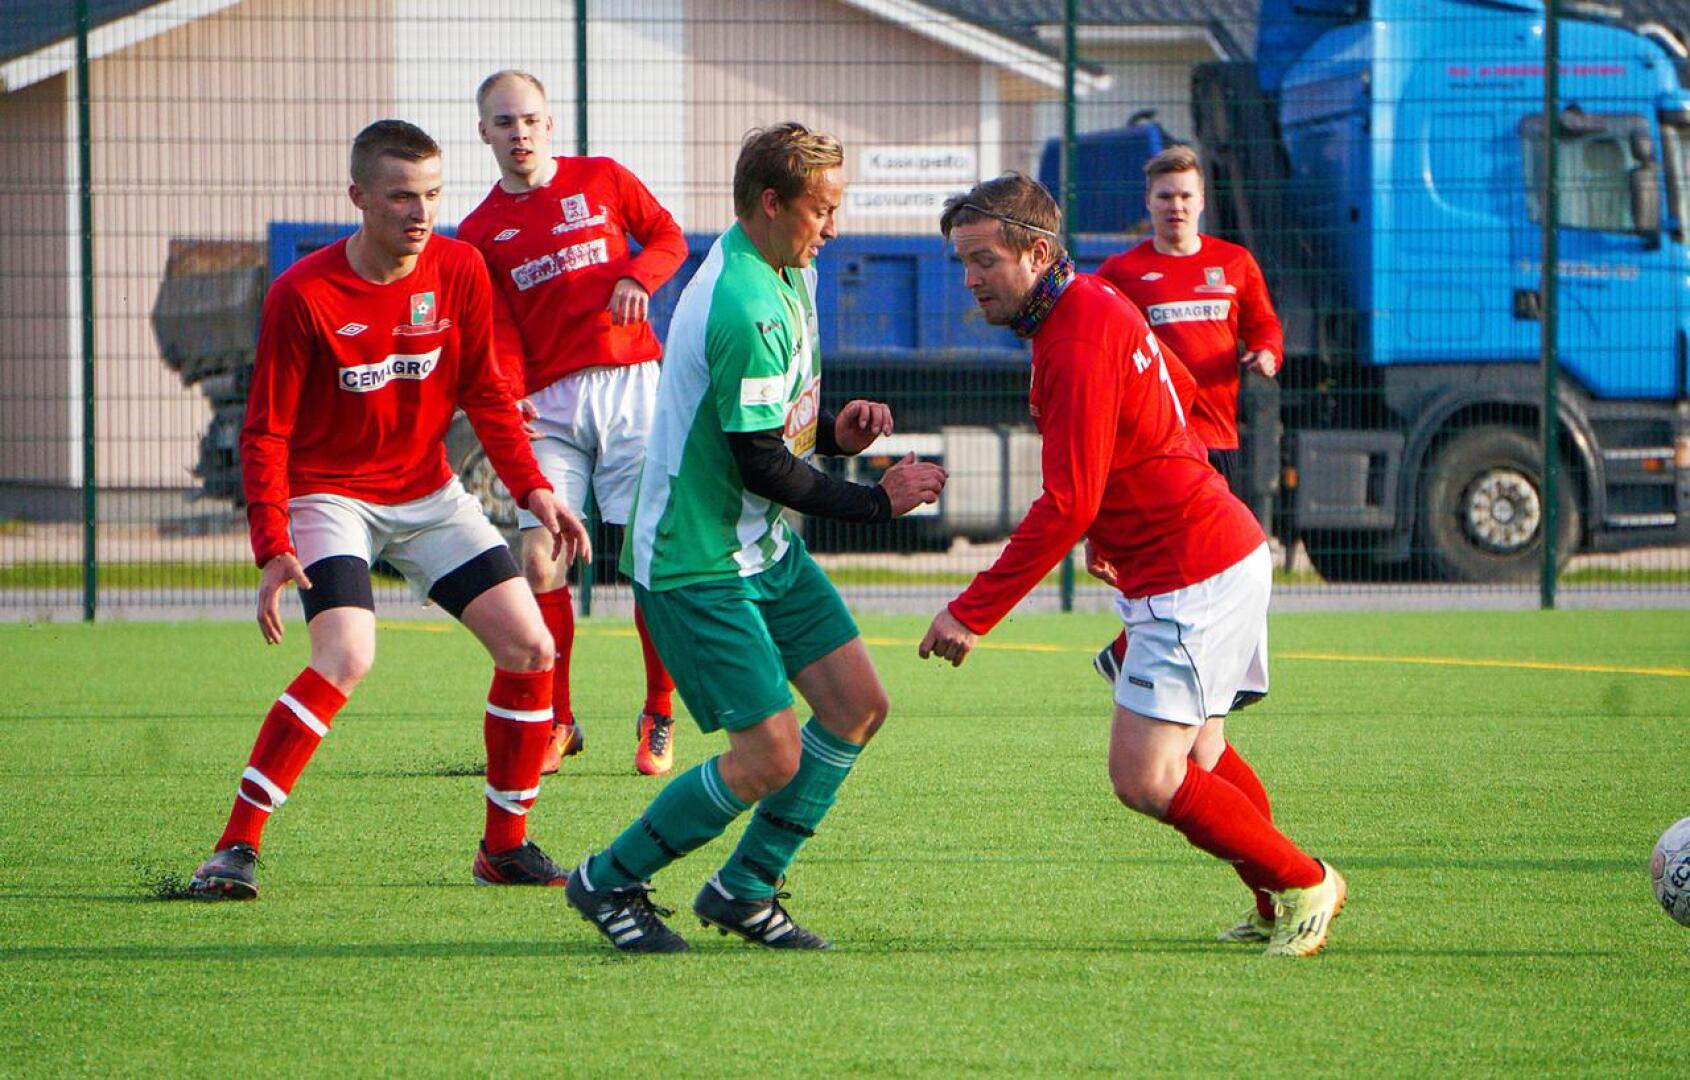 Reima on tuttu näky myös jalkapallokentiltä kokkolalaisen Ykspihlajan Reiman muodossa. Kuvassa vihreäpaitainen Reima vierailemassa Nivalassa FC-92:n vastustajana 5-divisioonan ottelussa kesällä 2017.